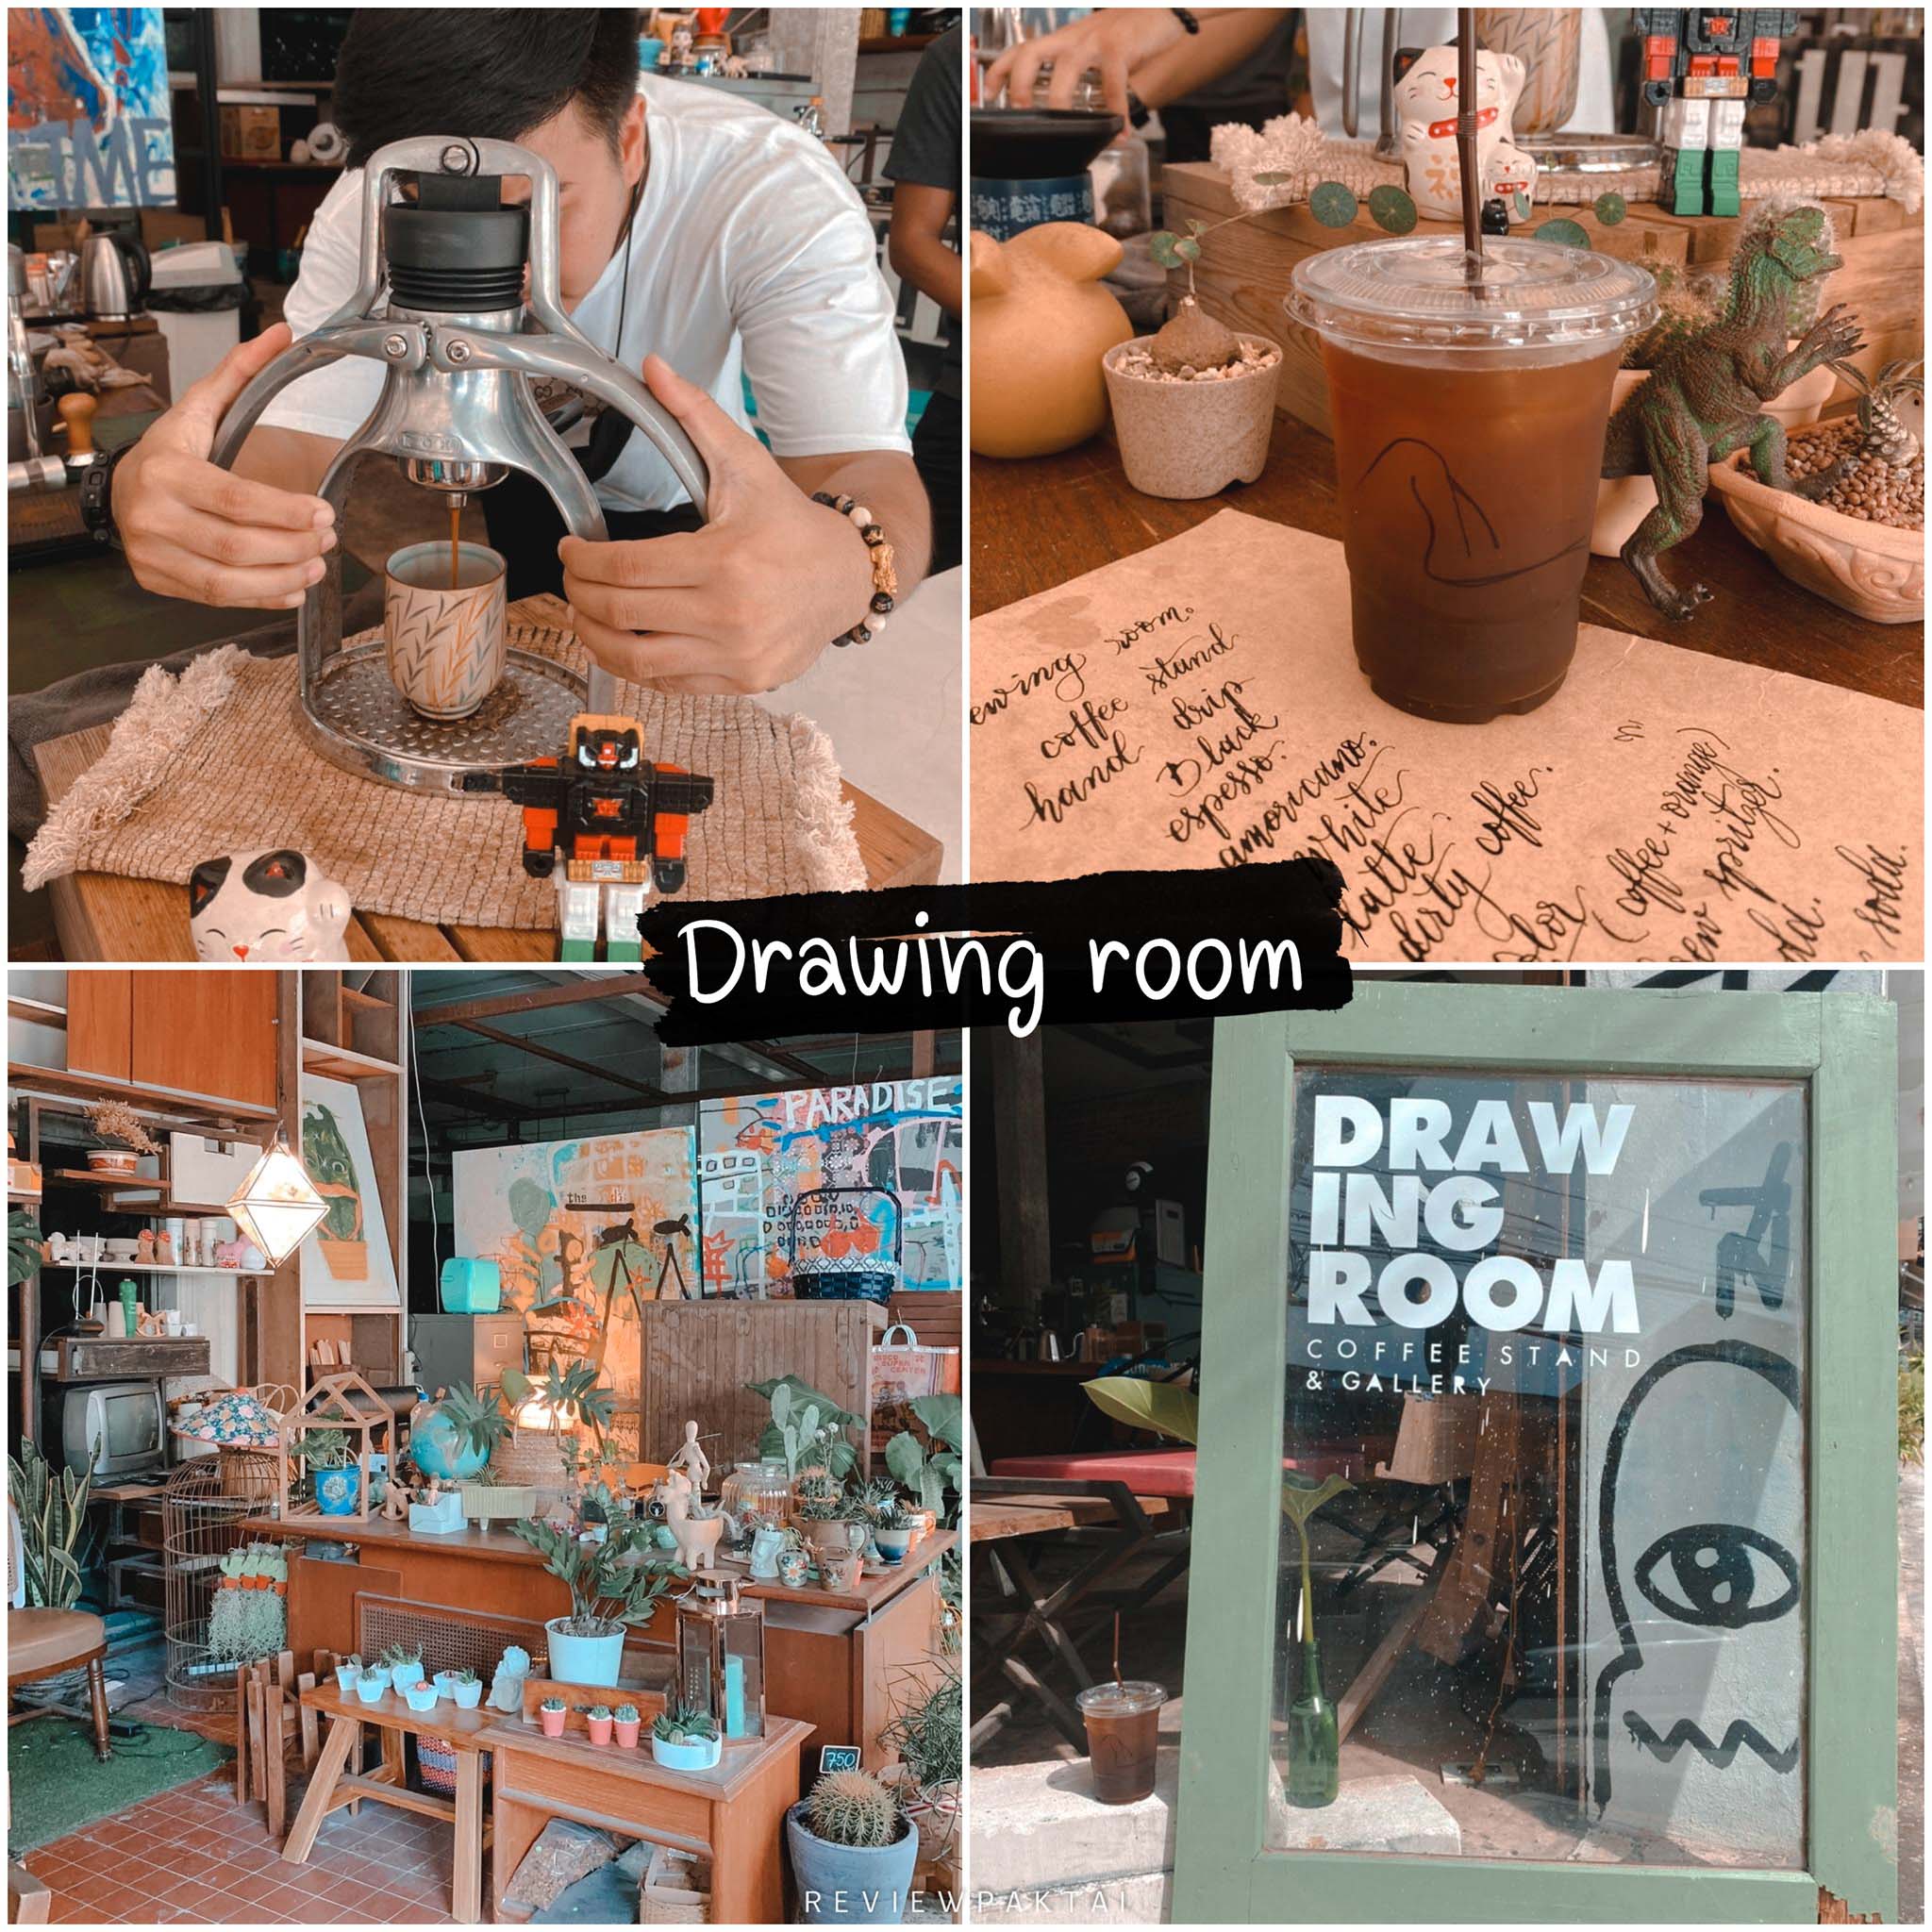 Drawing room coffee and gallery ร้านกาแฟแปลกใหม่แนวศิลปะ สายอาร์ทสายนั่งชิลๆต้องมาปักหมุดกันแล้วจ้า